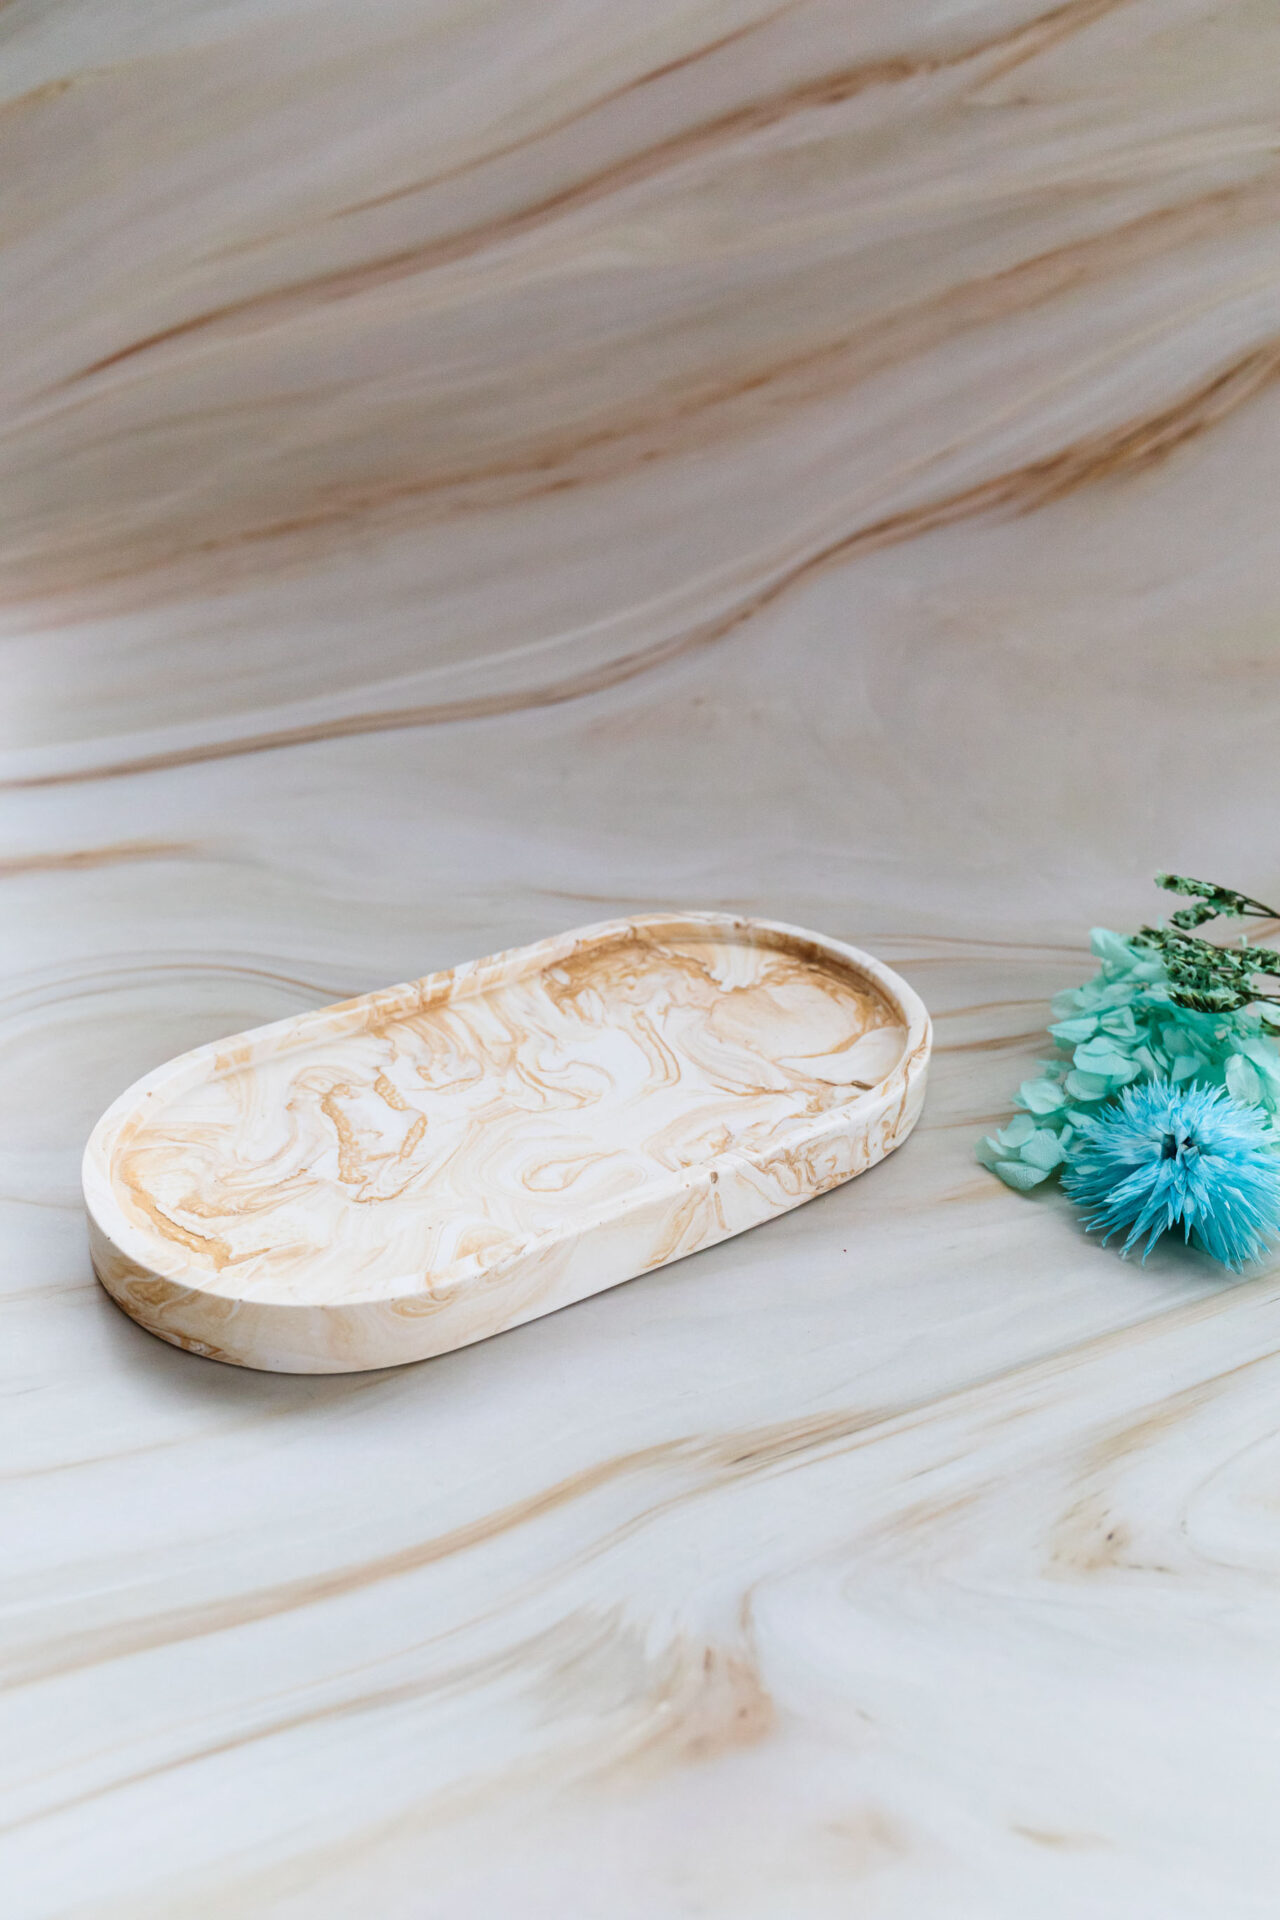 Vide poche oval blanc et doré marbré - Boutique en ligne d'idées cadeau et de décoration en jesmonite et en résine